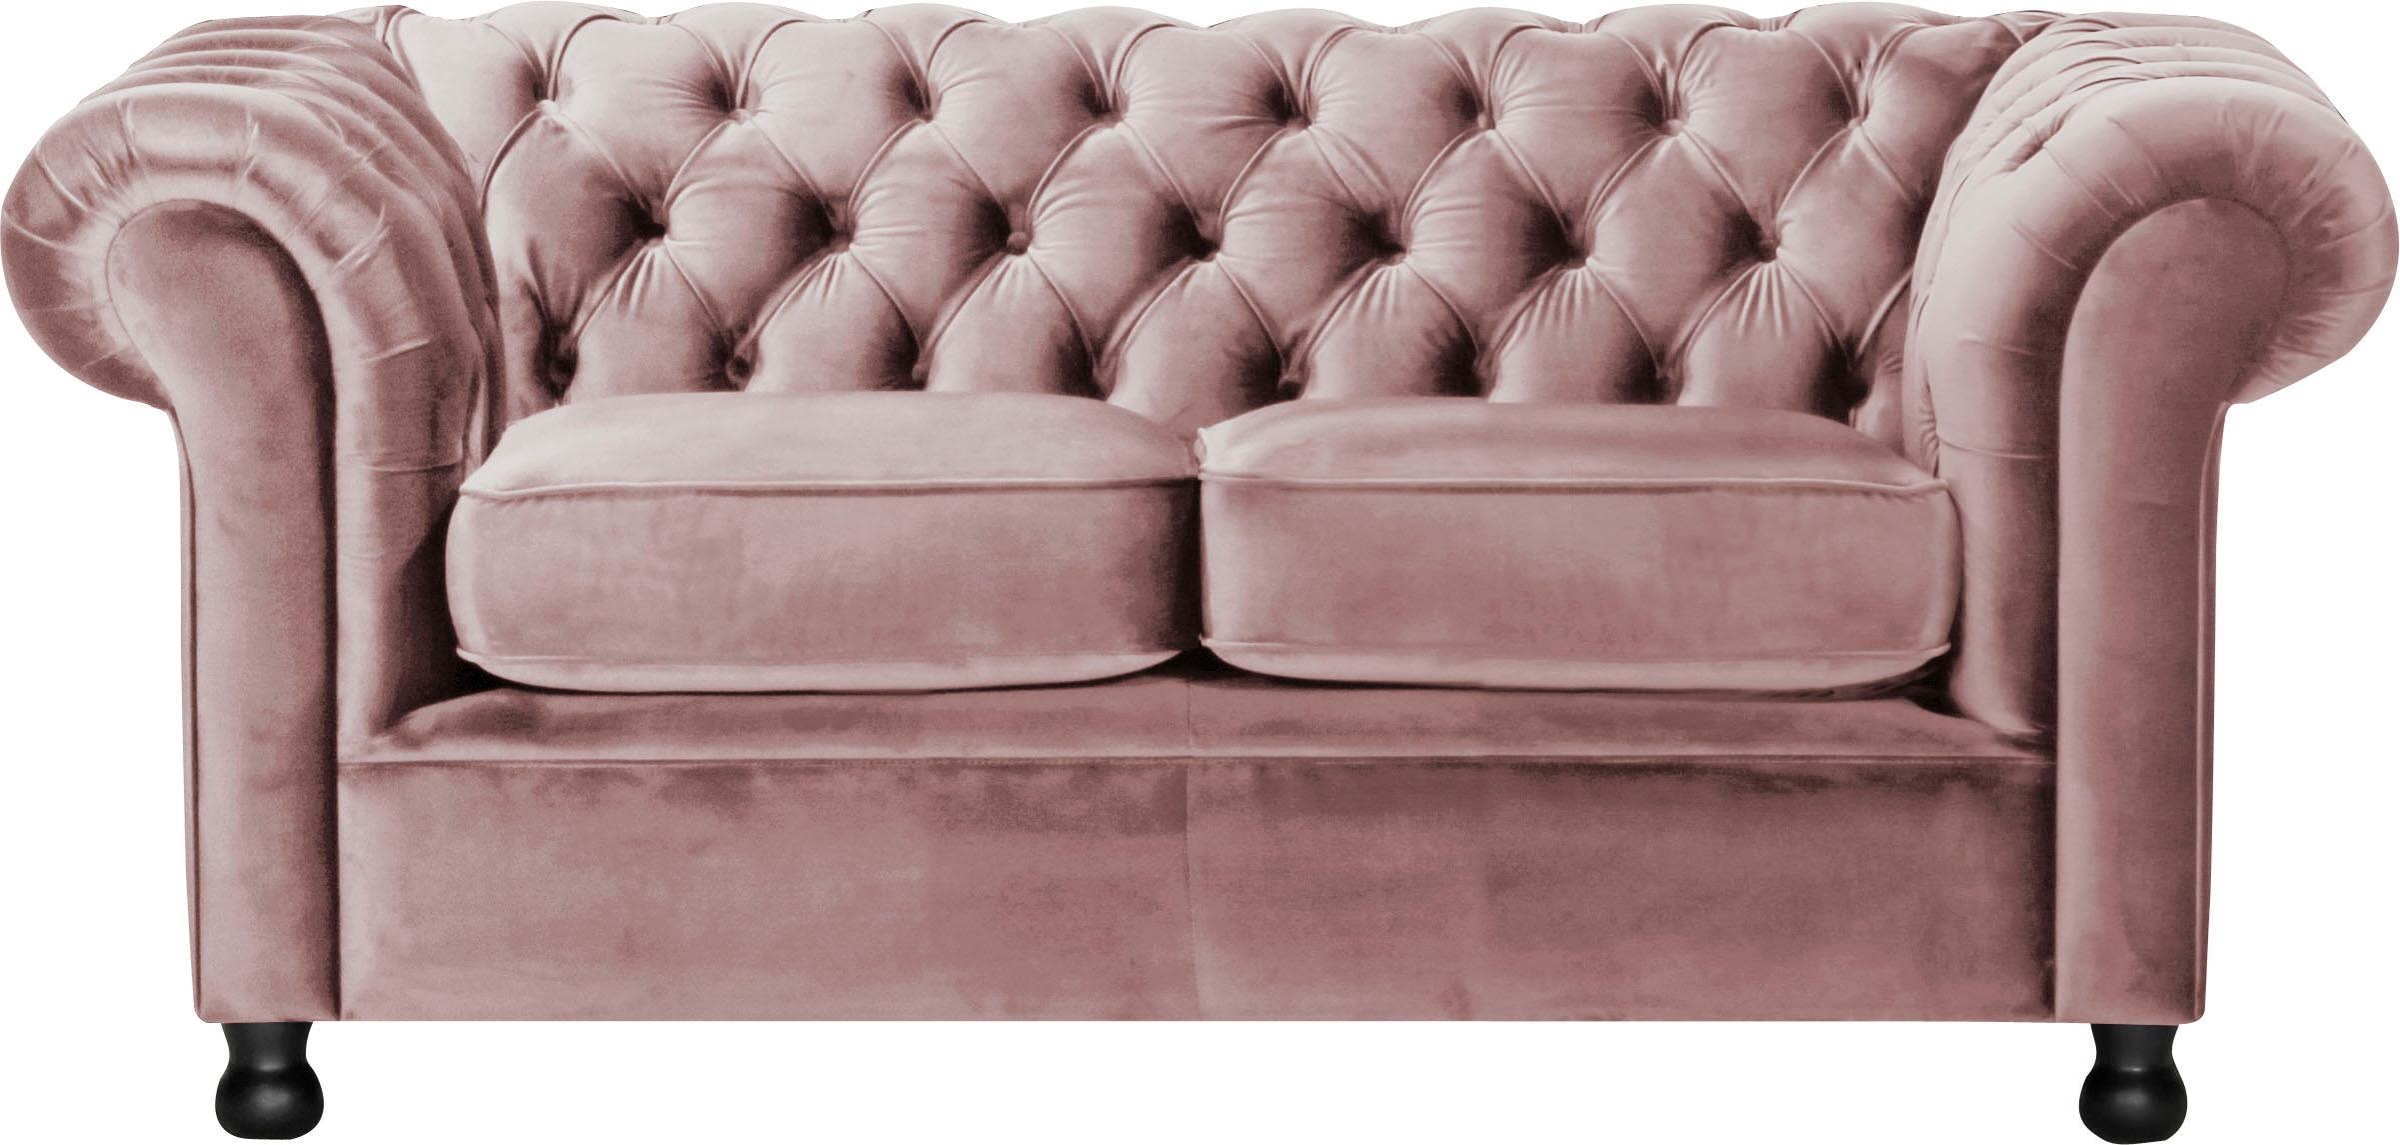 Home affaire Chesterfield-Sofa »Chesterfield Home 2-Sitzer«, mit edler Knopfheftung und typischen Armlehnen